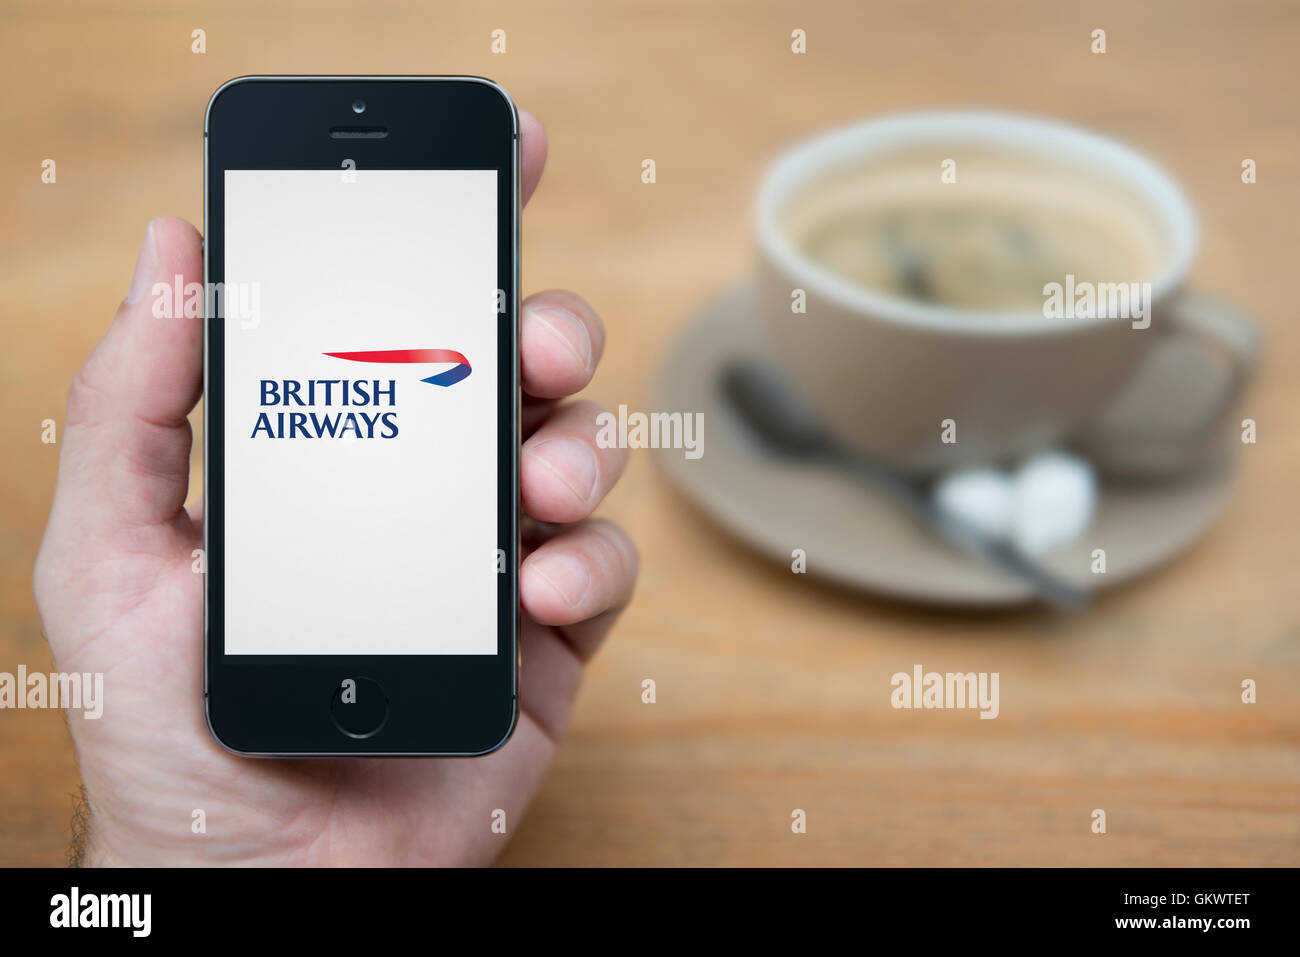 Un homme se penche sur son iPhone qui affiche le logo British Airways, alors qu'assis avec une tasse de café (usage éditorial uniquement). Banque D'Images